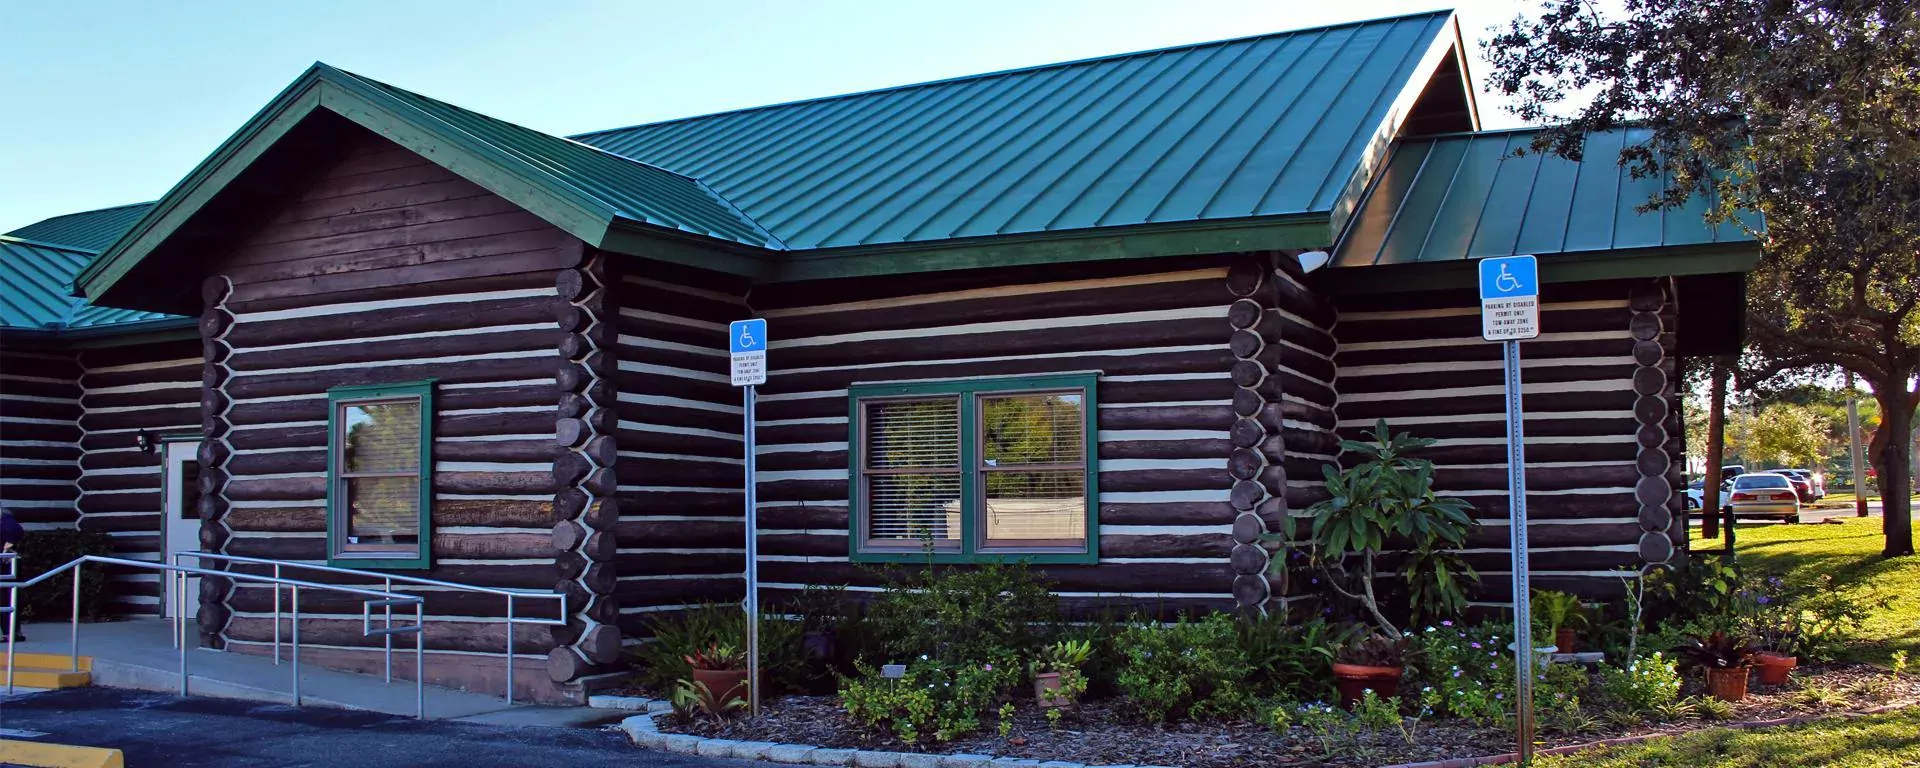 Log Cabin Senior Center